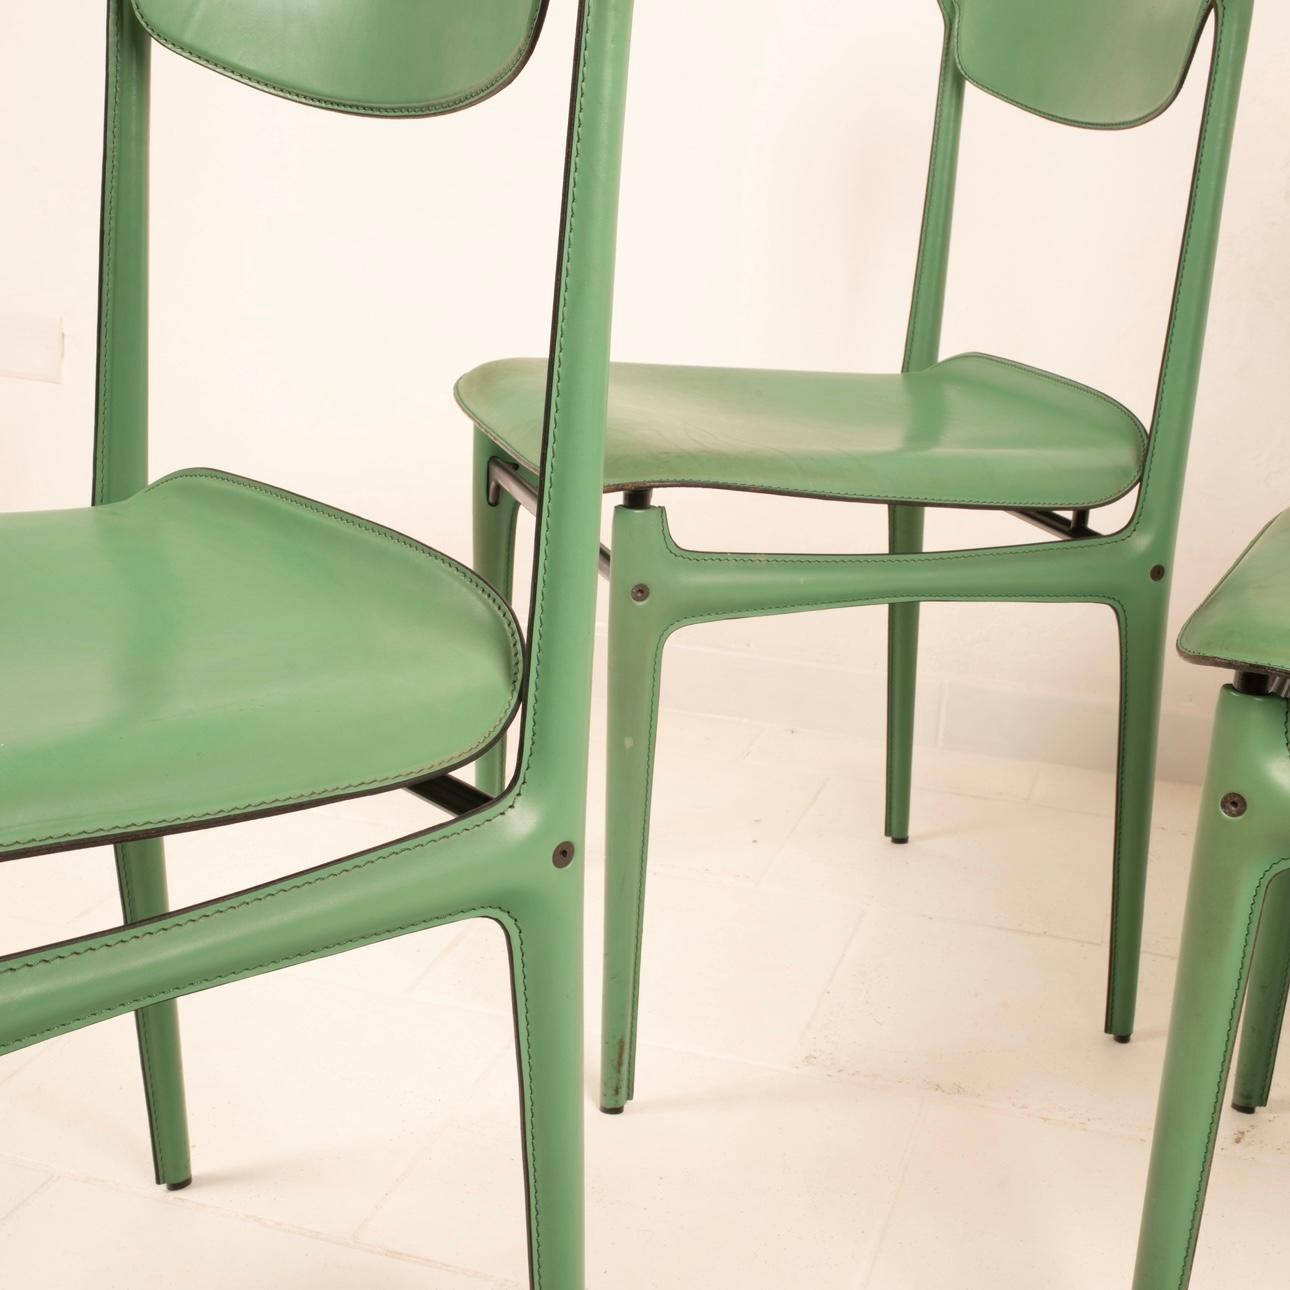 Außergewöhnlicher und seltener Satz von 4 tealfarbenen Lederstühlen, entworfen von Tito Agnoli und hergestellt von Matteo Grassi. Die Stühle sind mit hochwertigen Lederbezügen ausgestattet, die mit feinen Details und Nähten versehen sind und ihnen